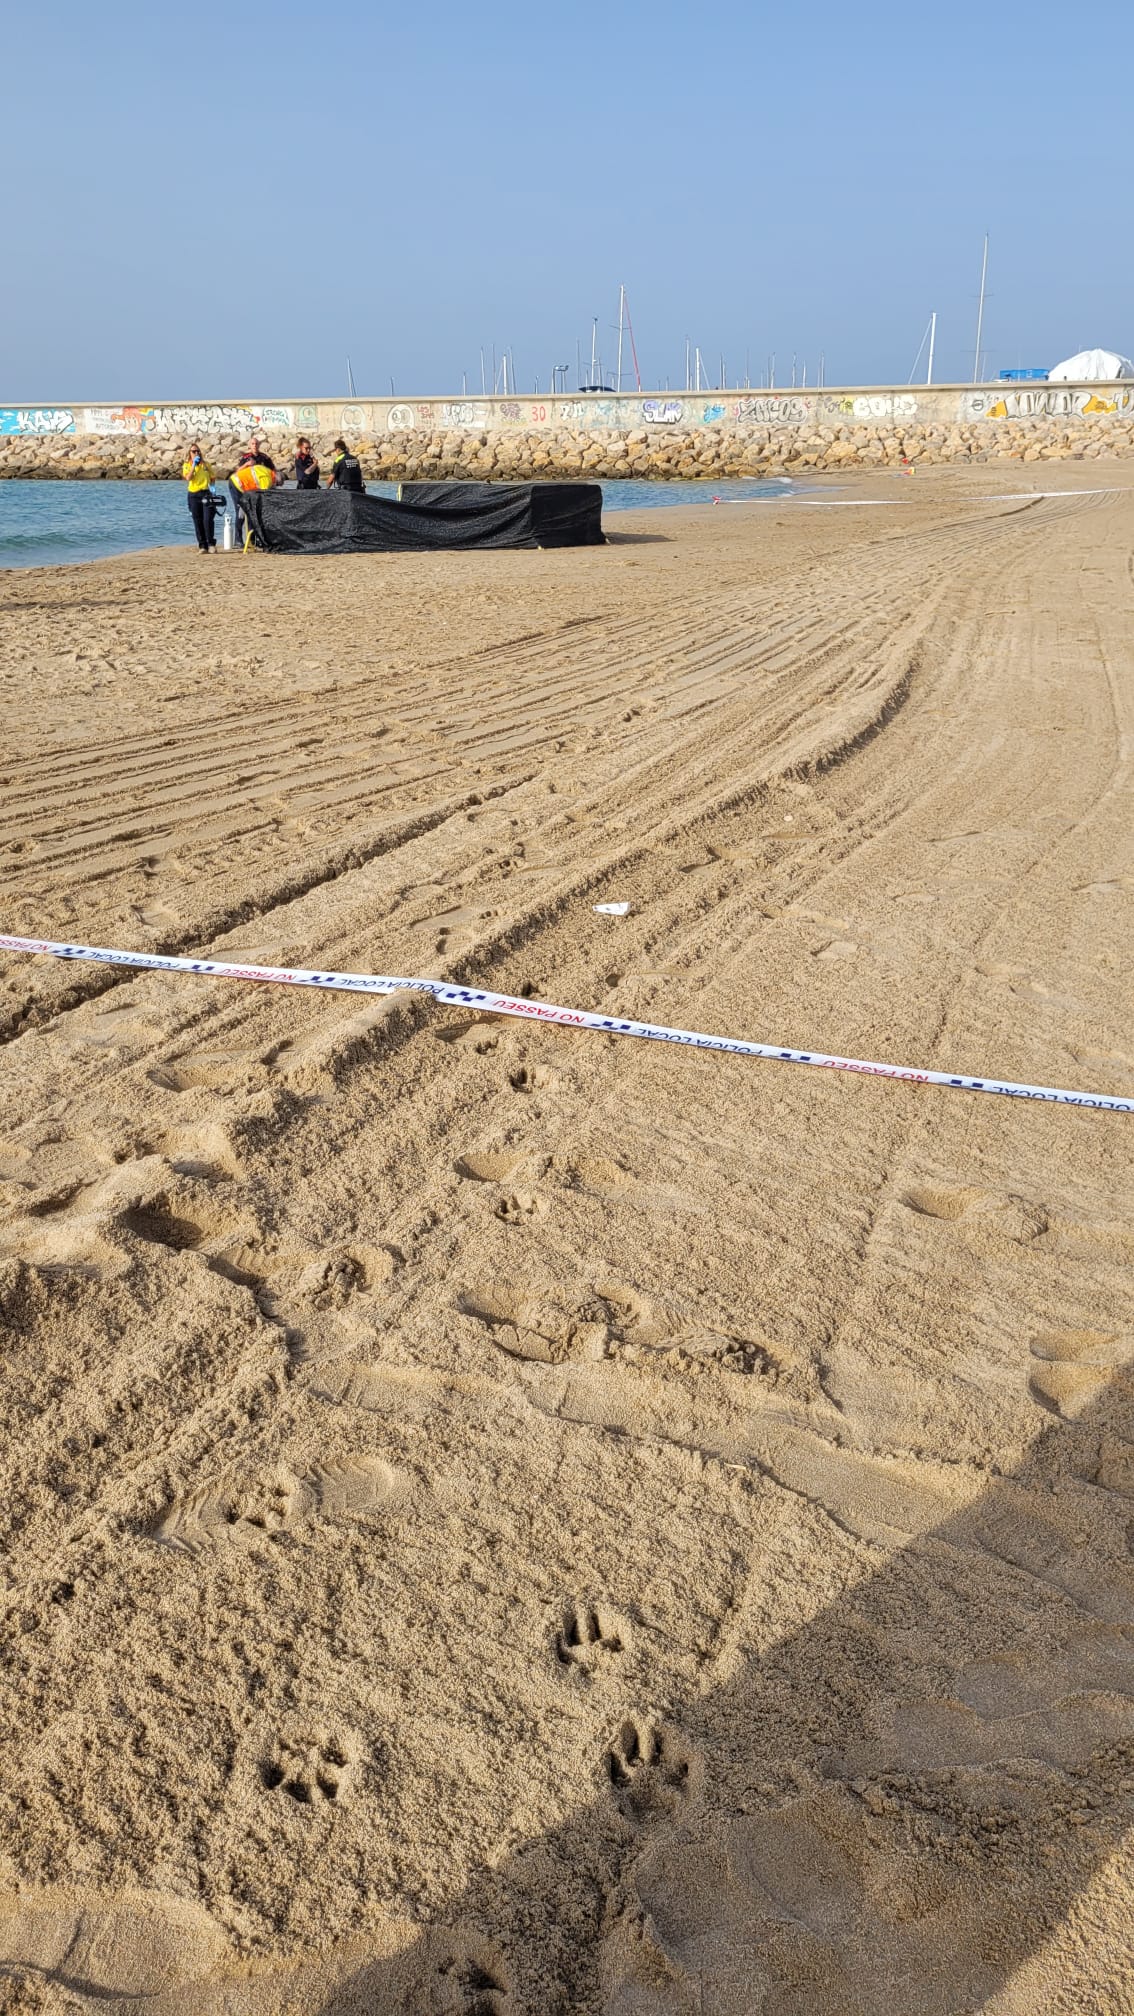 عثر على جثة طفل مقطوع الرأس على شاطئ إسباني